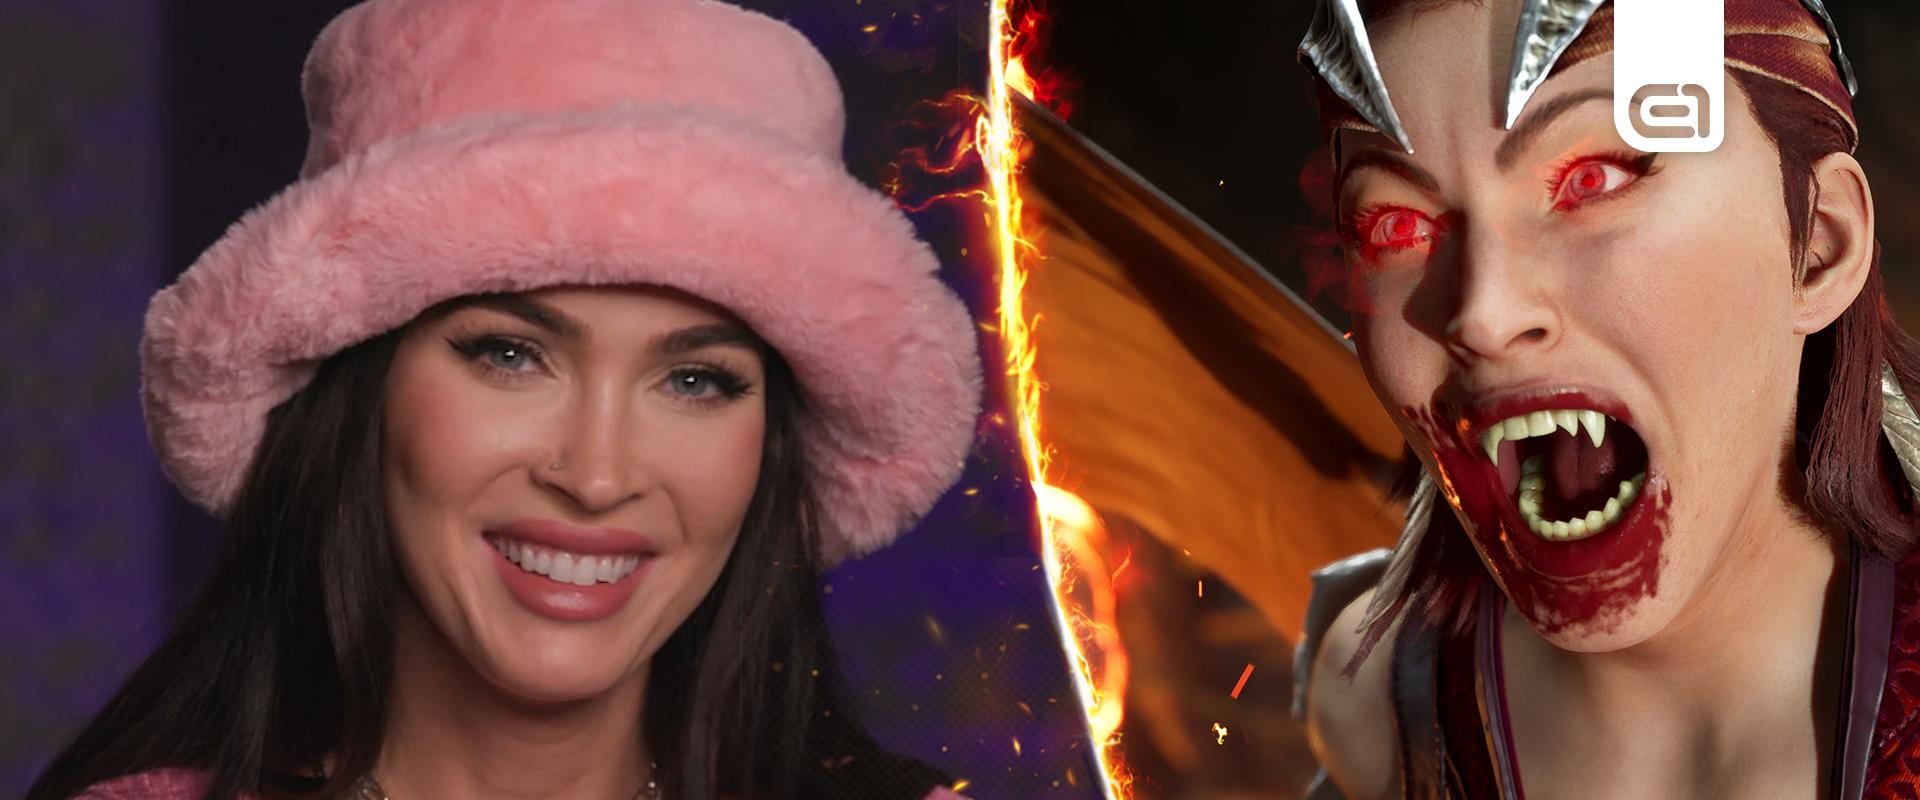 Megan Fox lesz a hangja a Mortal Kombat 1-be 17 év után visszatérő karakternek!